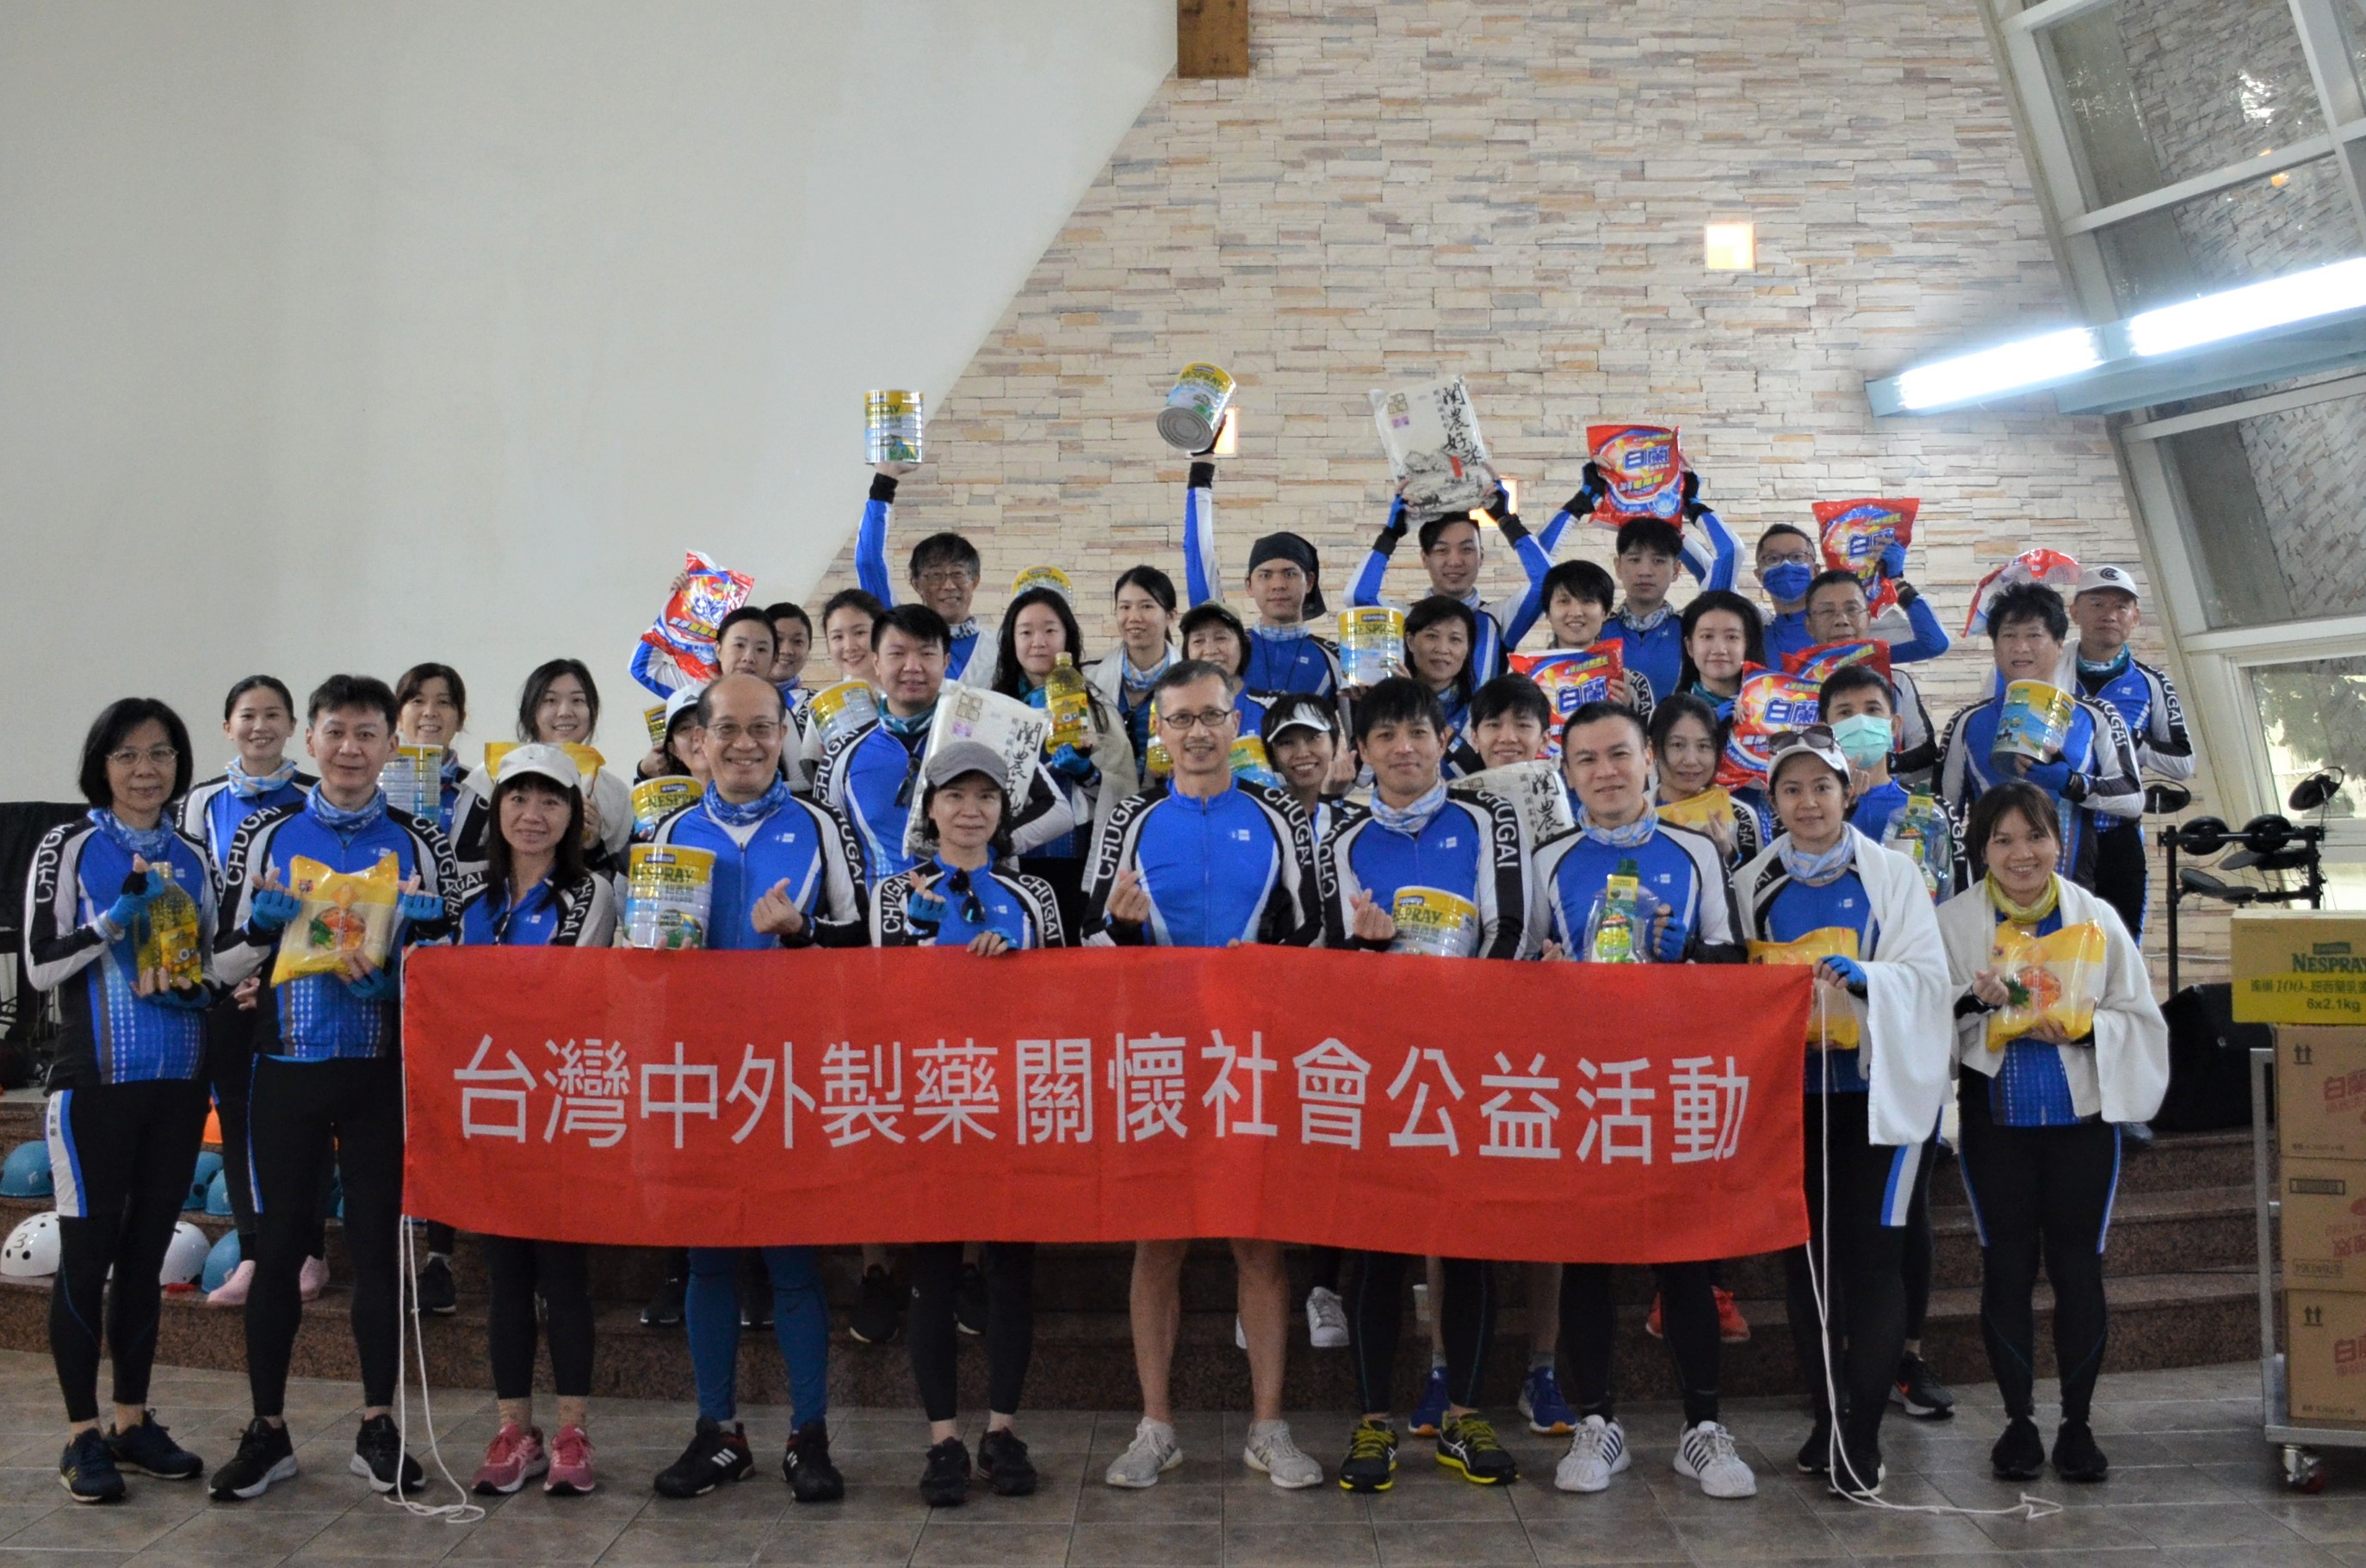 Chugai Pharma Taiwan’s Yilan Charity Cycling Campaign – Care about Yilan Orphan Foundation